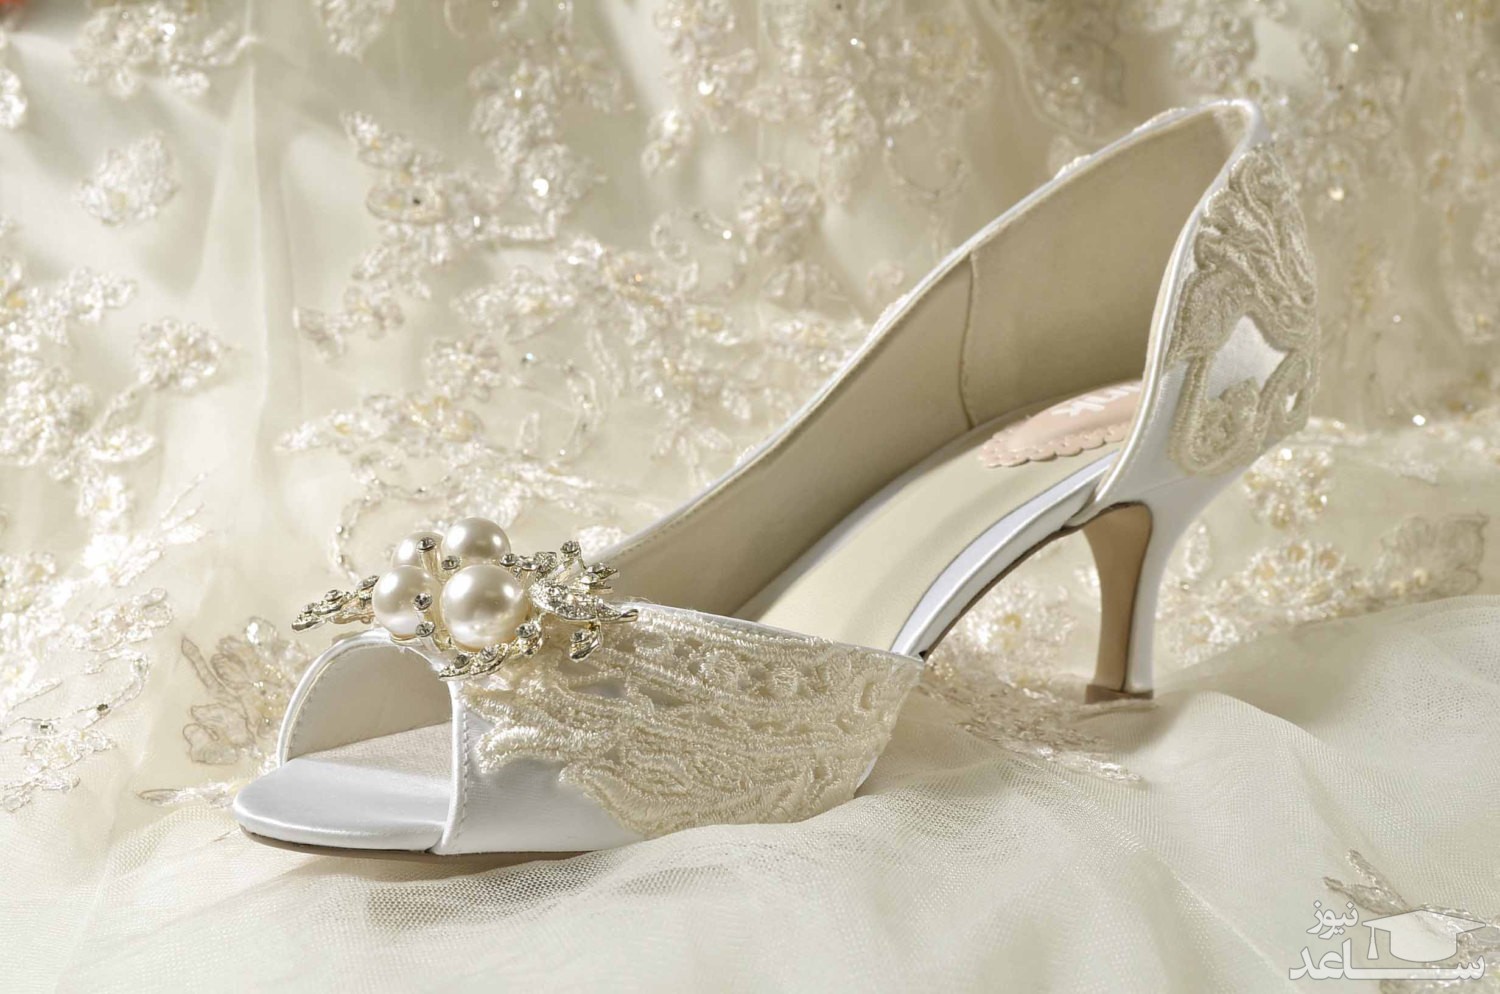 زیباترین مدل های کفش عروس پاشنه کوتاه